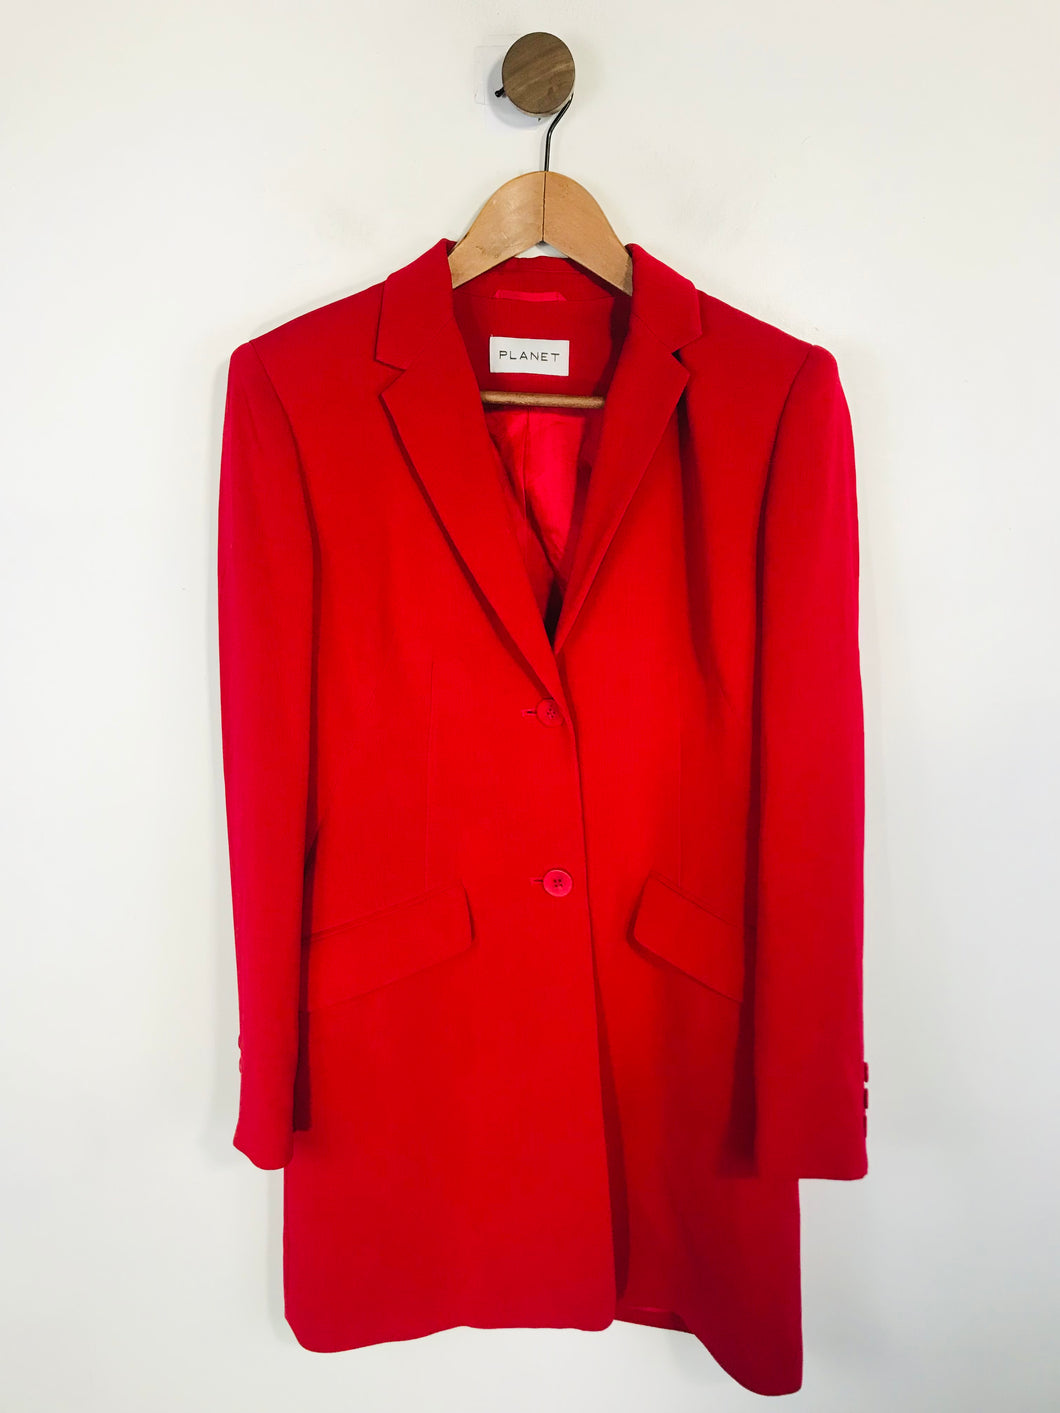 Planet Women's Longline Tailored Blazer Jacket | UK8 | Red